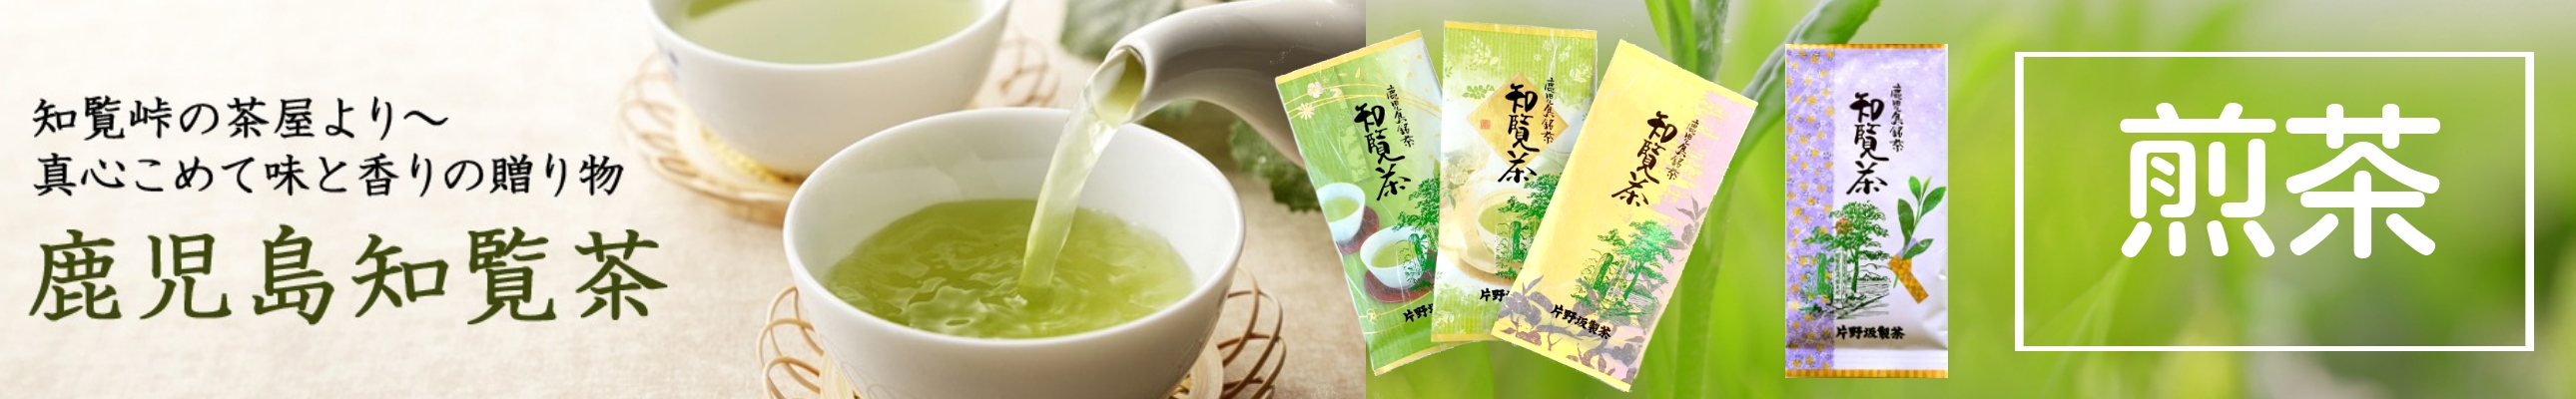 お茶の製造・直売片野坂製茶 ヘッダー画像